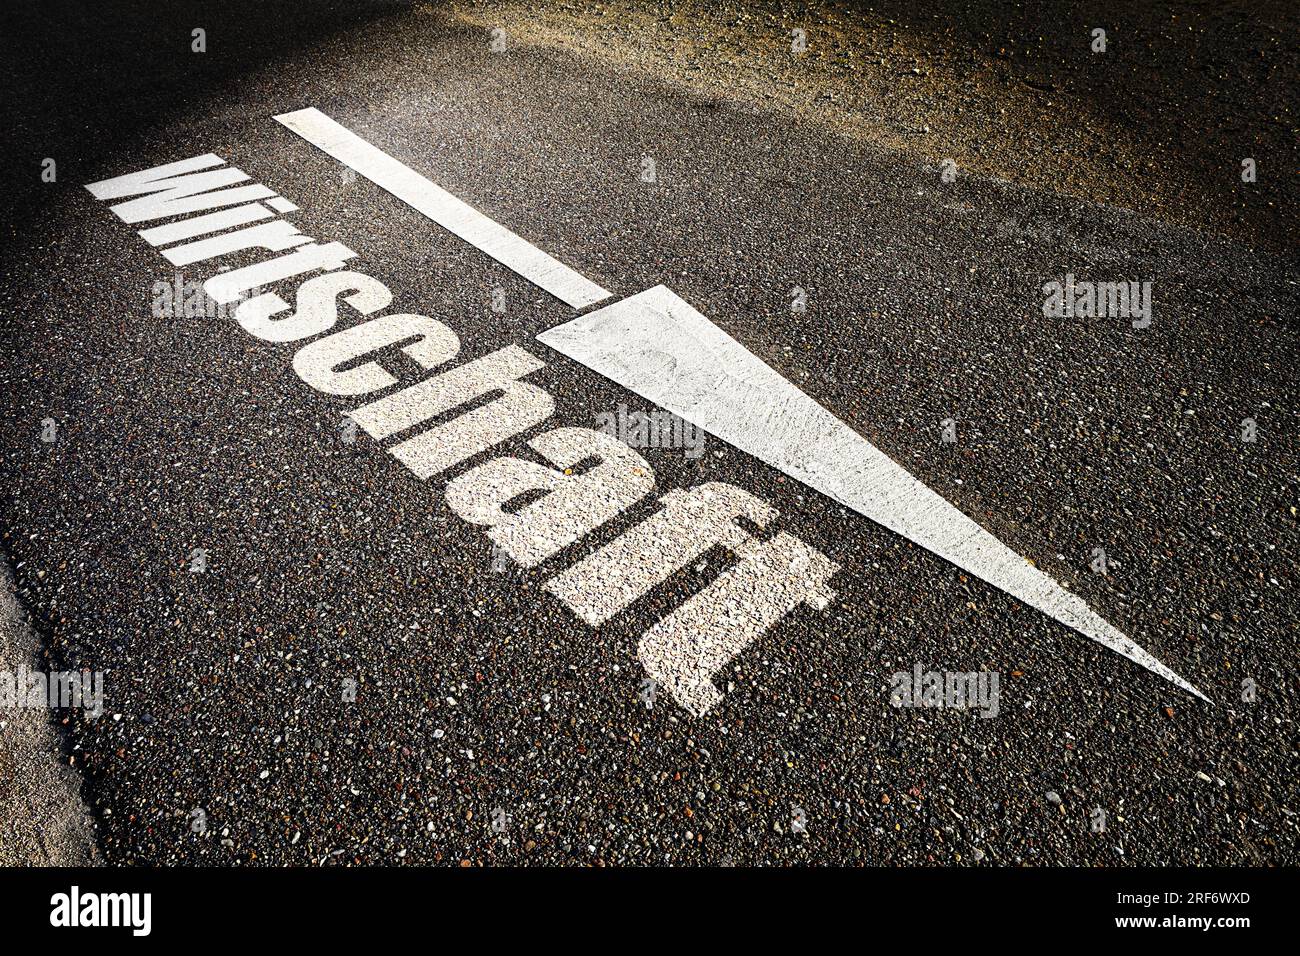 FOTOMONTAGE, Absteigendes Pfeilsymbol auf Straßenasphalt und Schriftzug Wirtschaft, Symbolfoto Wirtschaftskrise Stock Photo